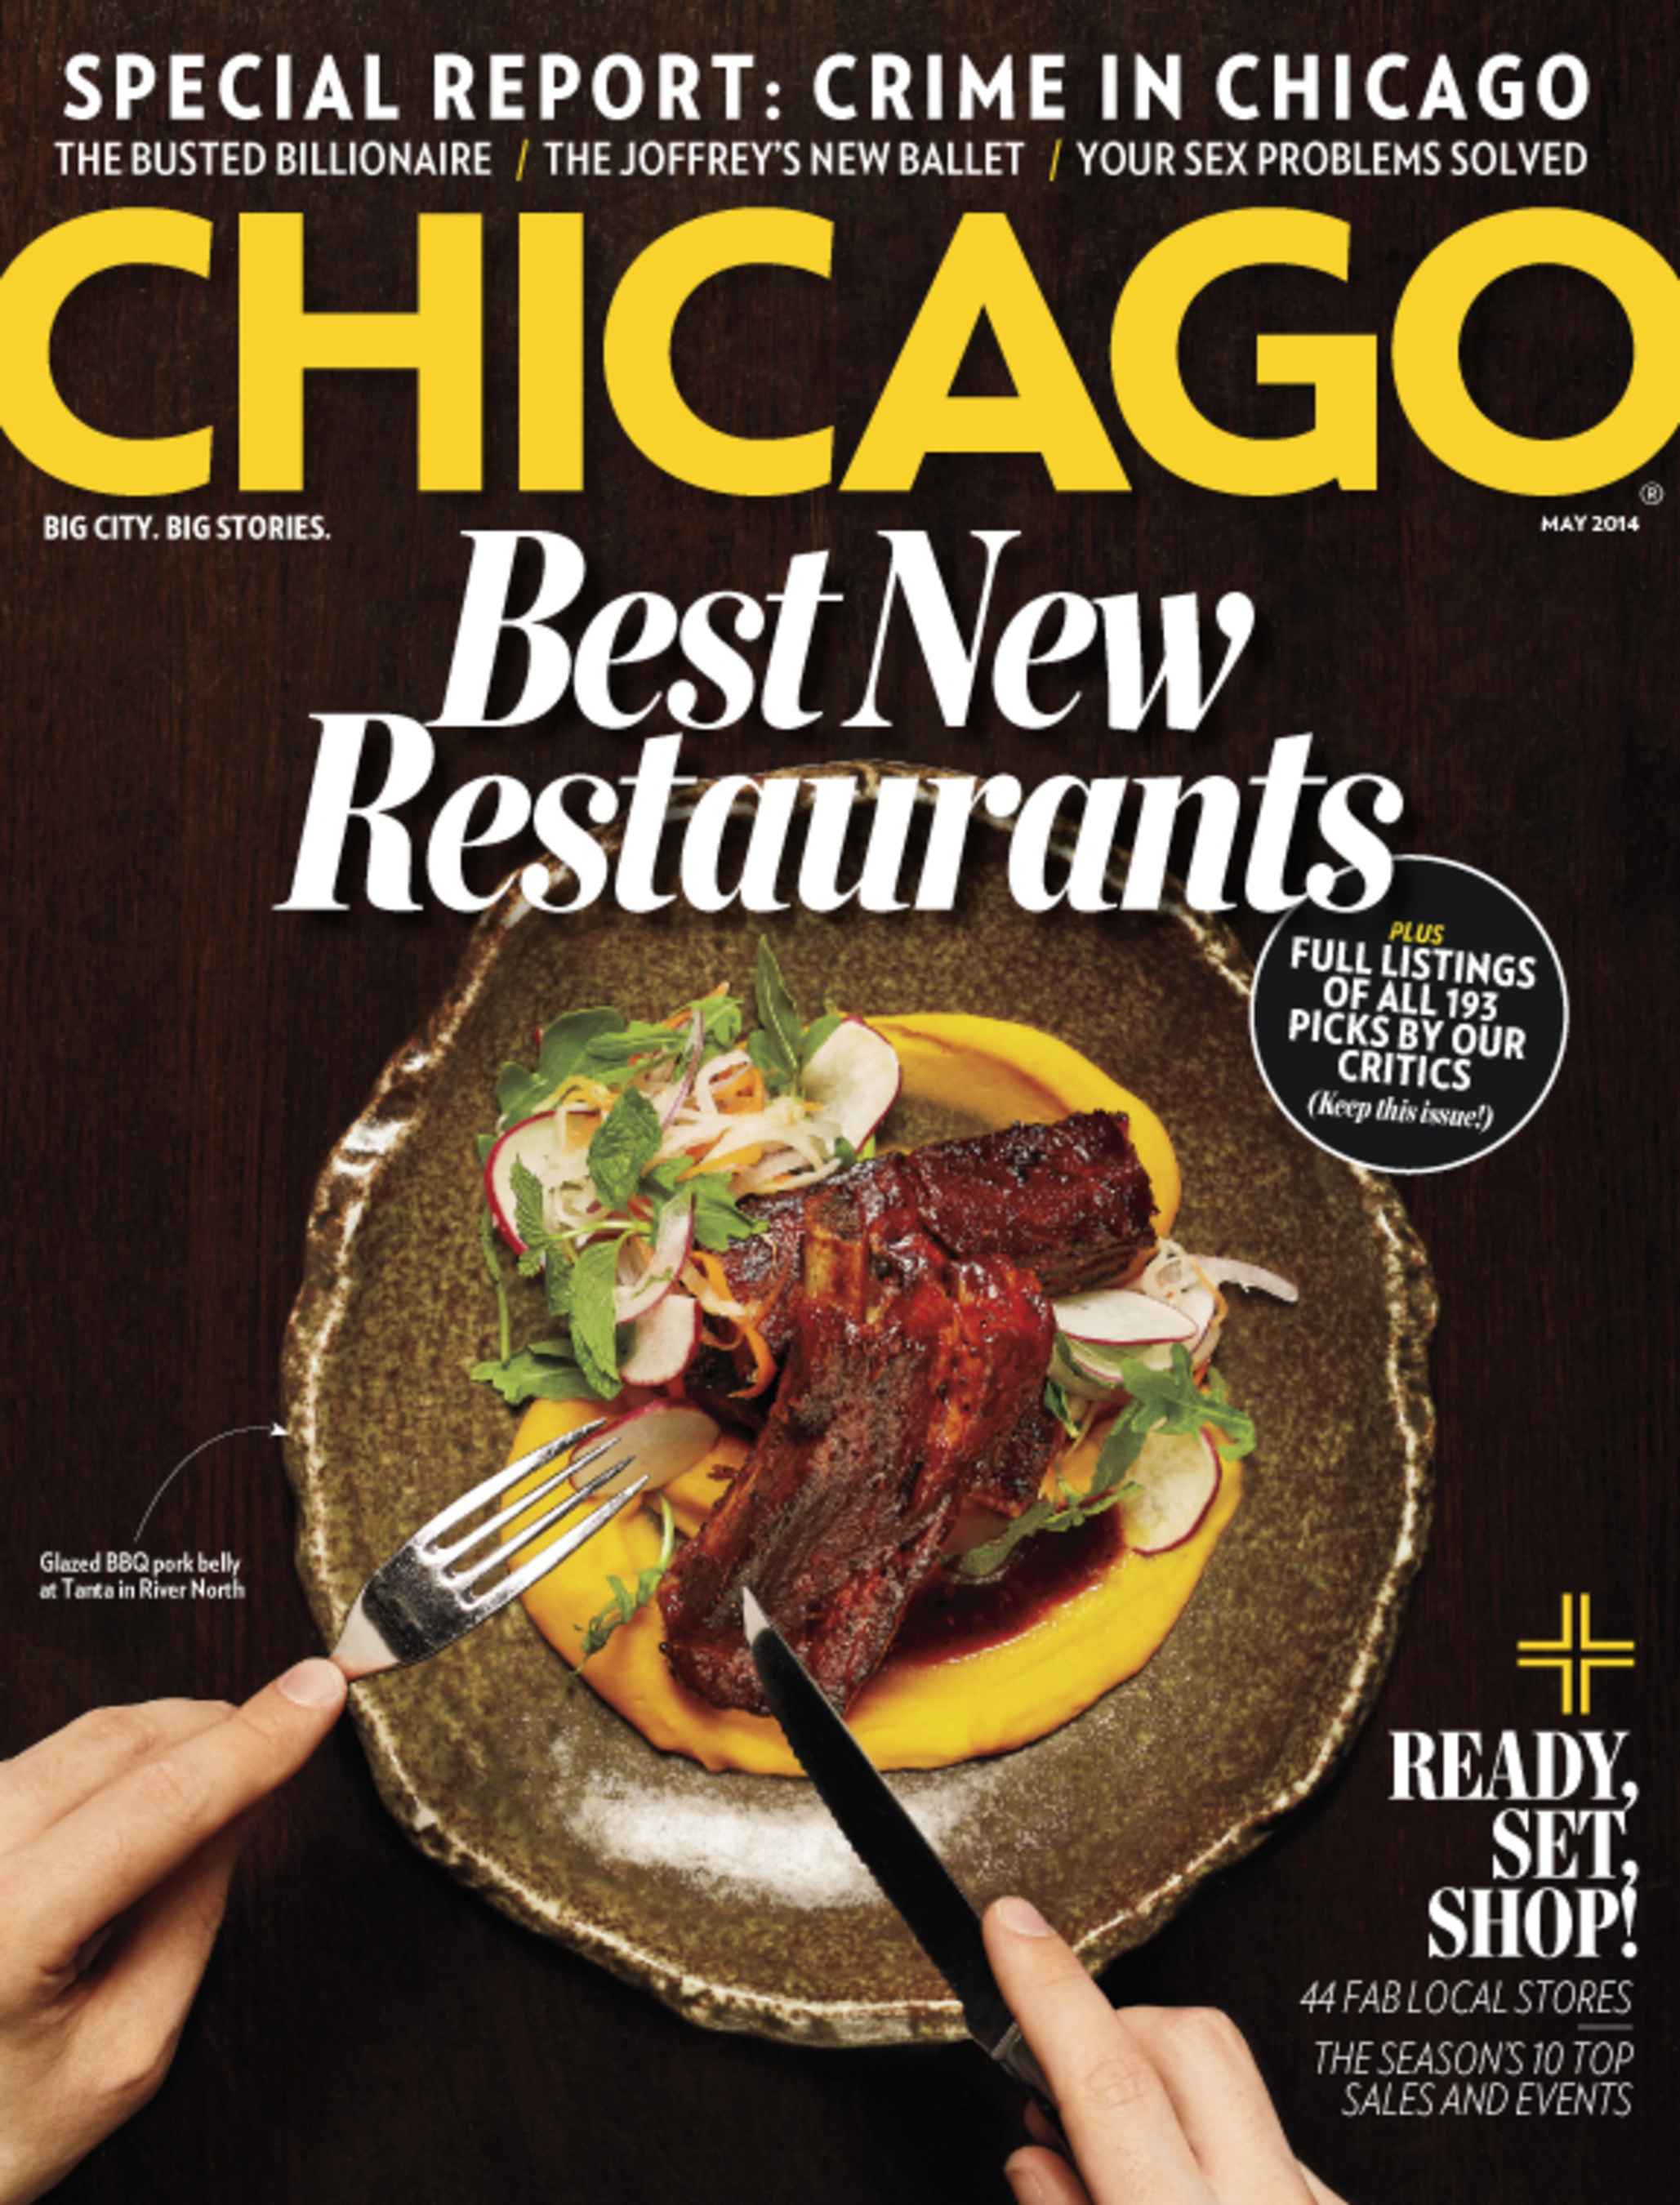 Chicago magazine May Issue, Best New Restaurants  (PRNewsFoto/Chicago magazine)